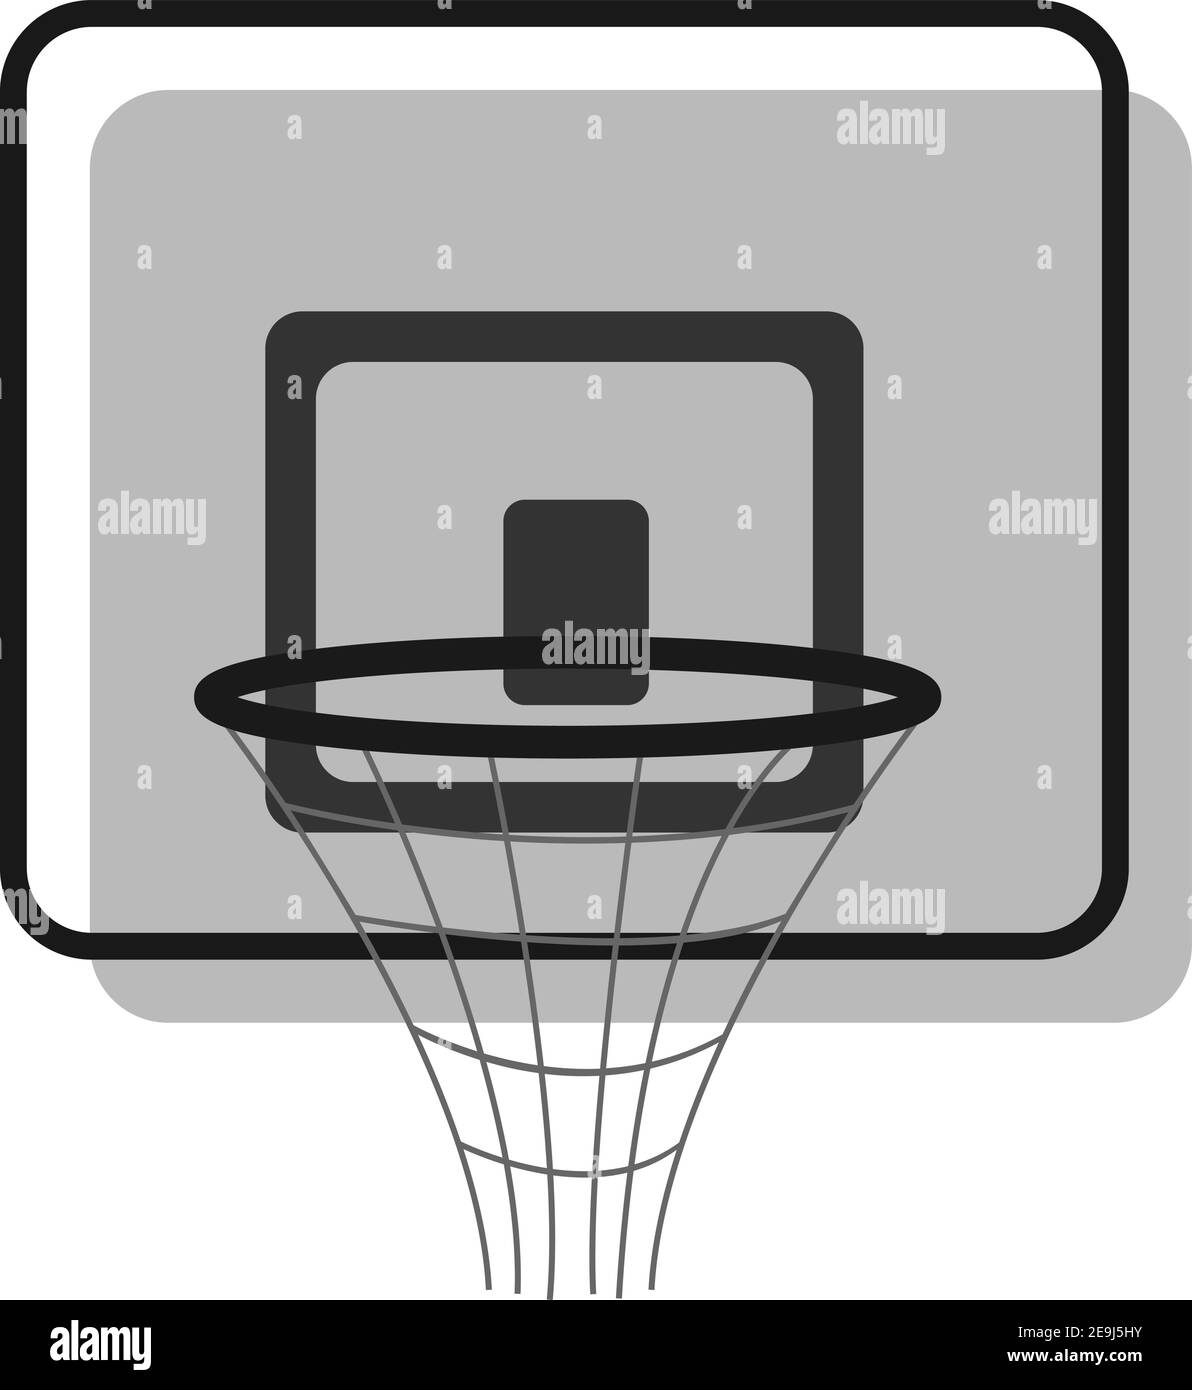 Basketball score, illustration, vector on white background. Stock Vector